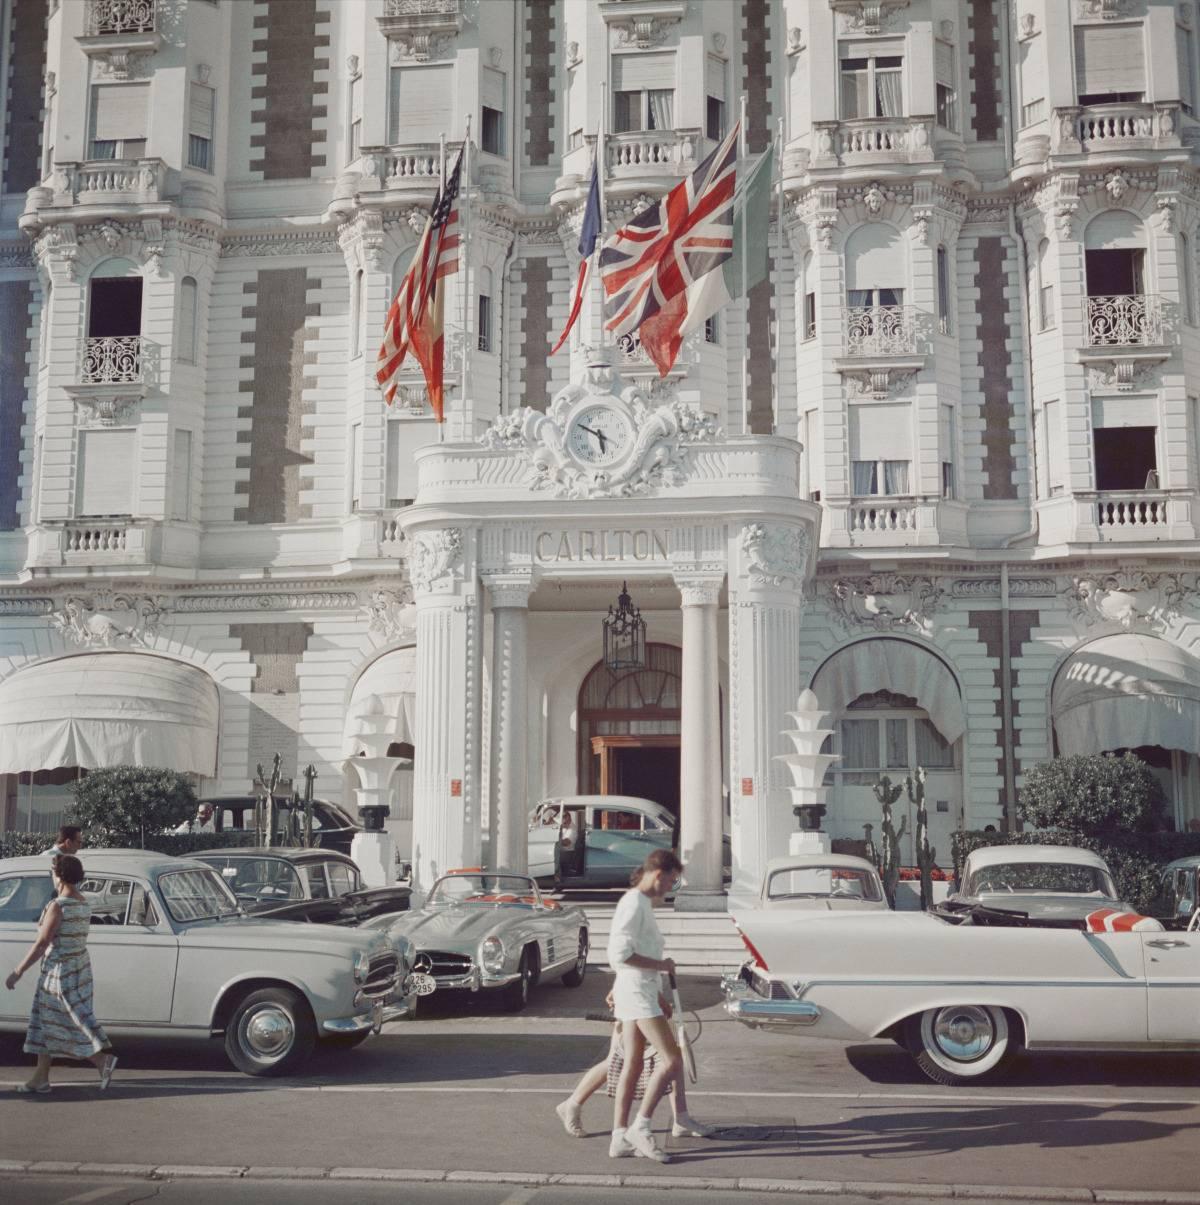 Hotel Carlton
1958
C Druck
Nachlassgestempelte und handnummerierte Auflage von 150 Stück mit Echtheitszertifikat des Nachlasses. 

Der Eingang zum Carlton Hotel, Cannes, Frankreich, 1958. 

Slim Aarons (1916-2006) arbeitete hauptsächlich für